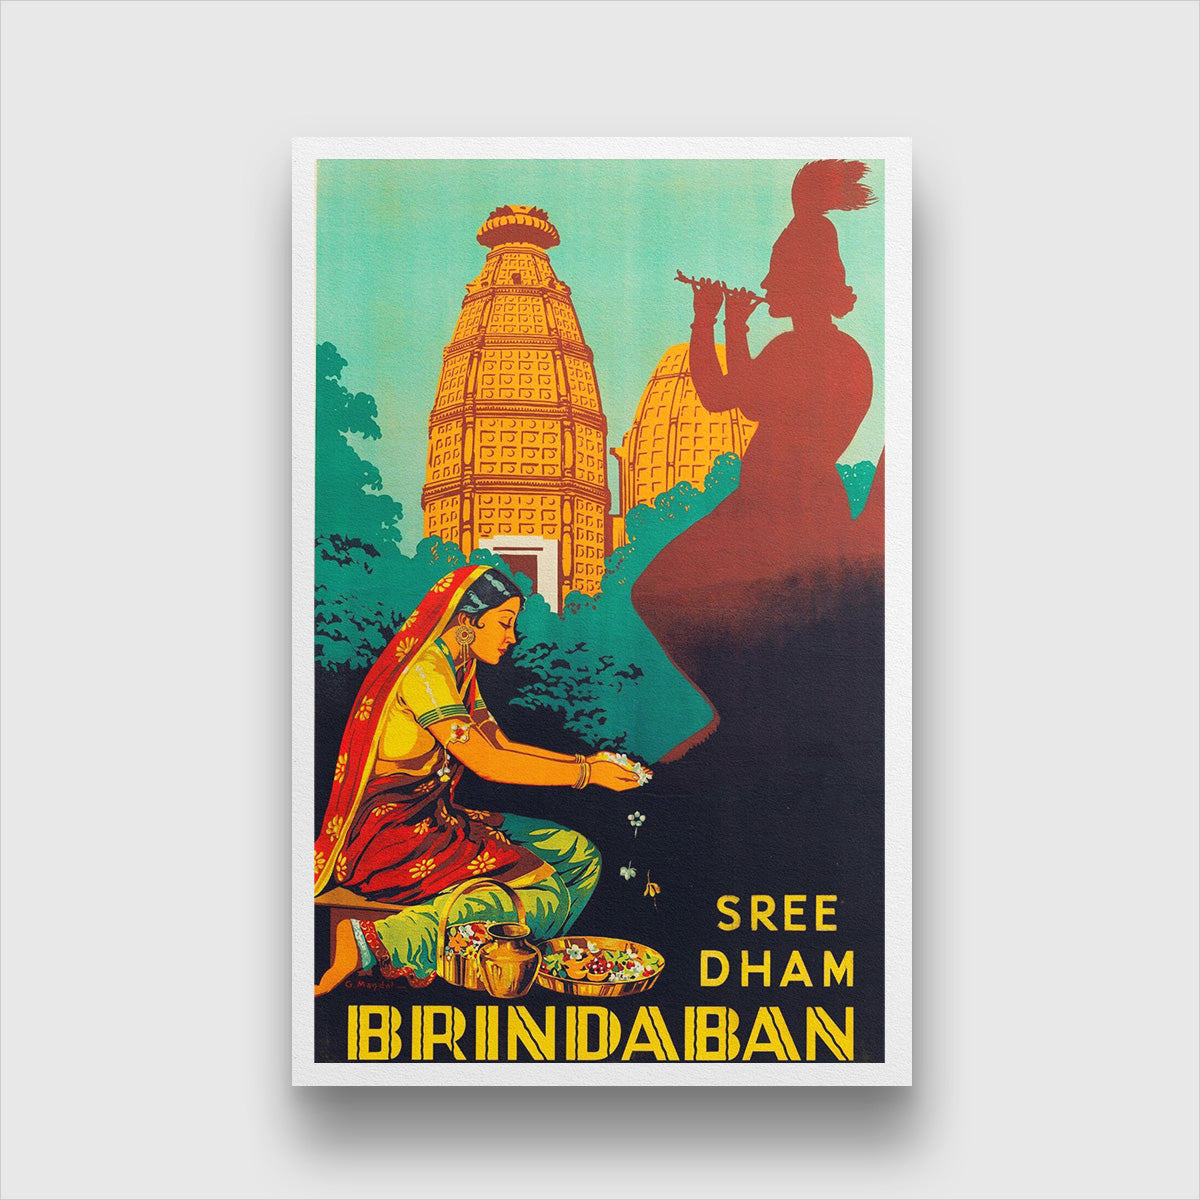 Sree dham brindaban Uttar Pradesh  Vintage poster